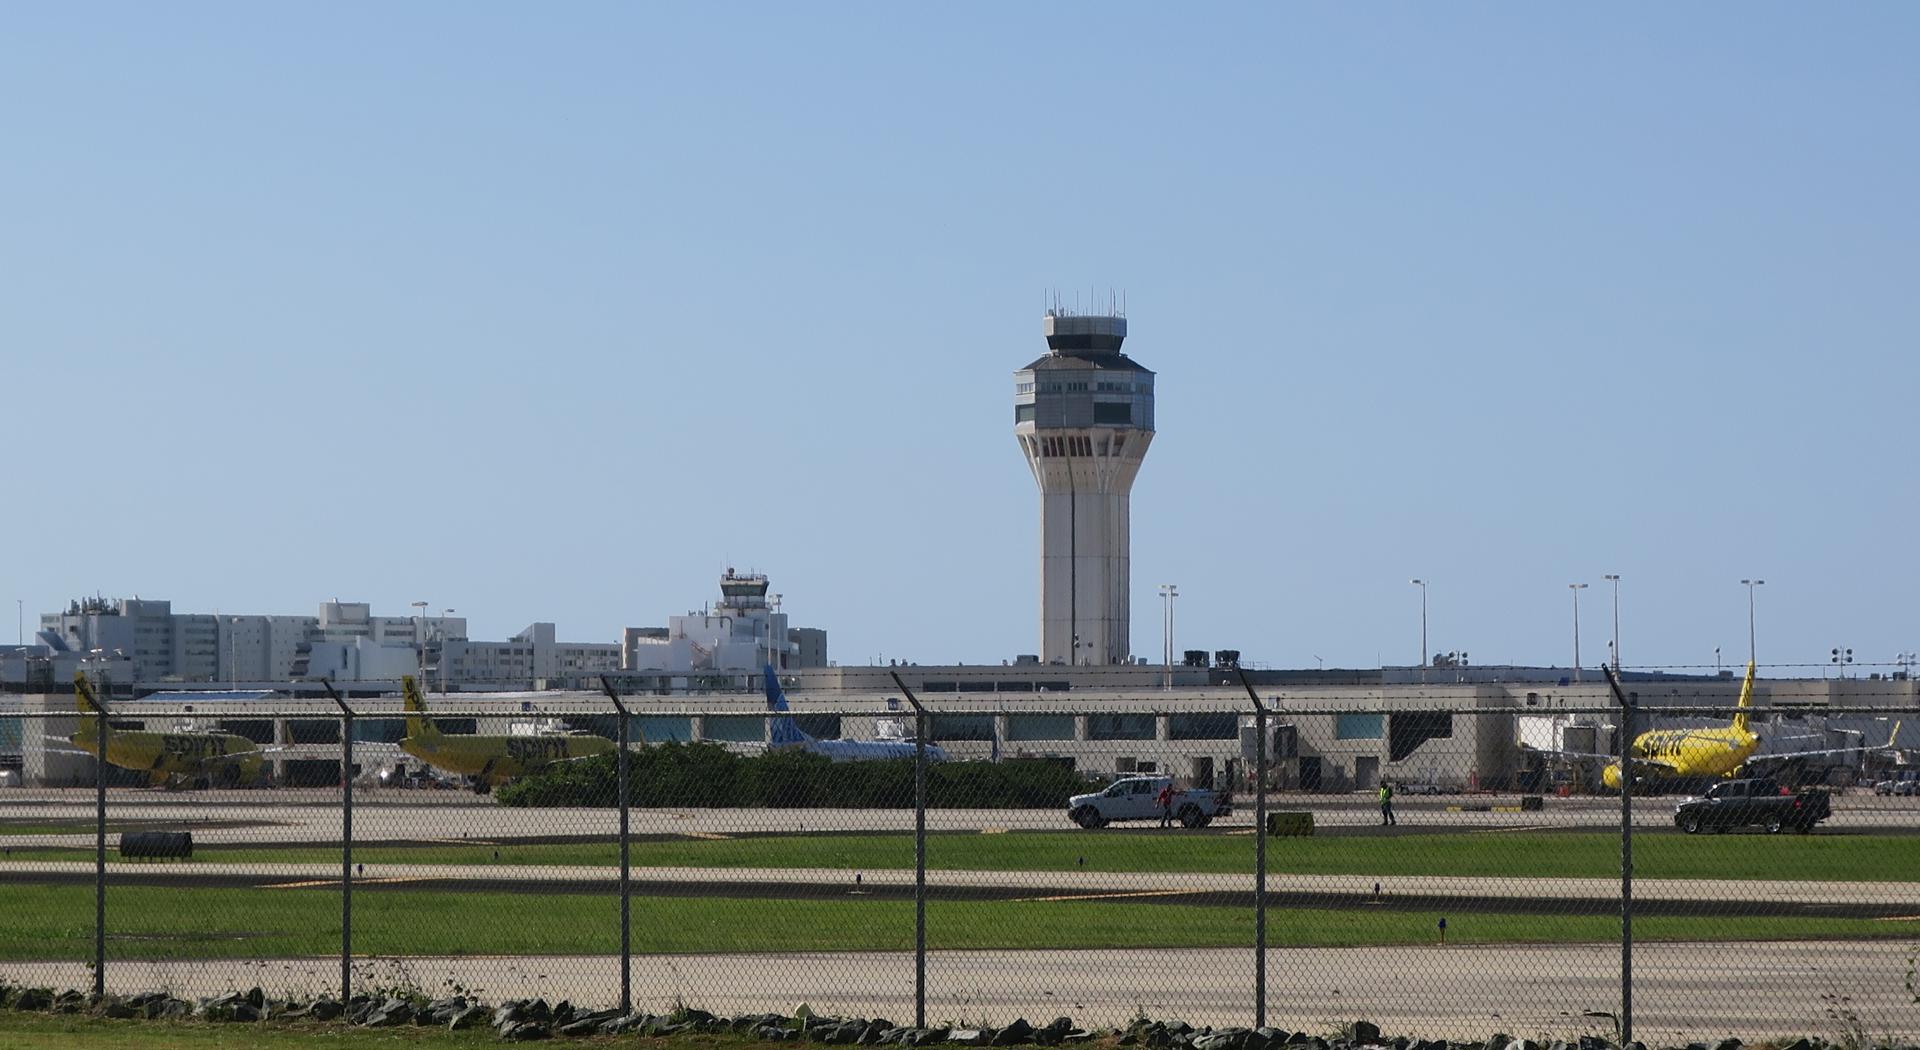 Imagen de archivo en donde se observan varios aviones en un hangar en el aeropuerto internacional Luis Muñoz Marín en Carolina, cerca de San Juan (Puerto Rico). EFE/Jorge Muñiz